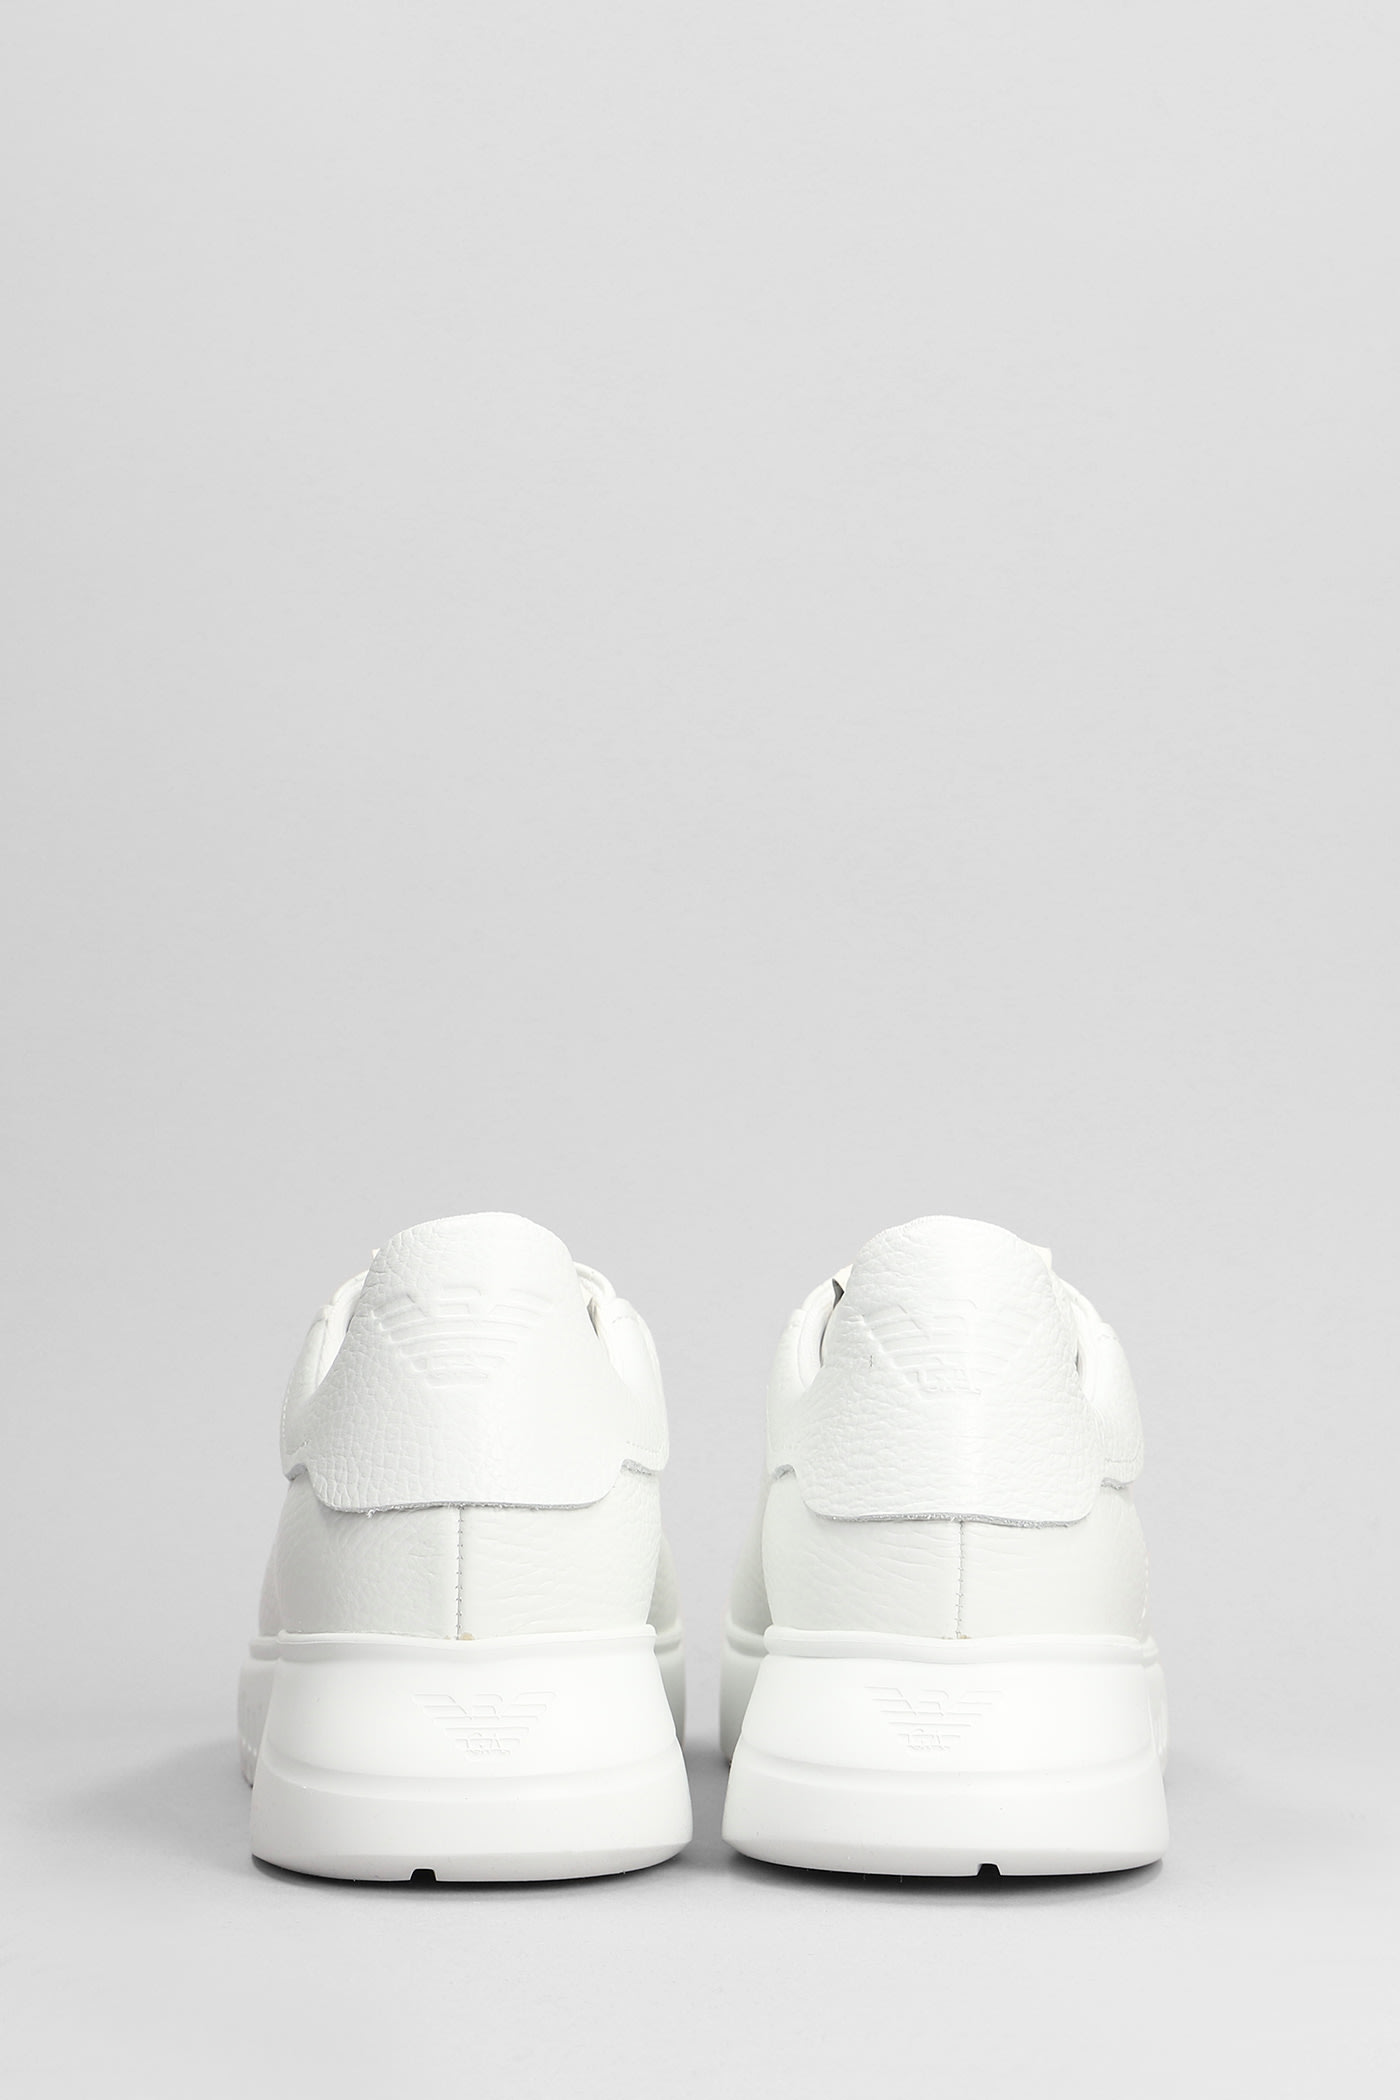 Shop Emporio Armani Sneakers In White Leather